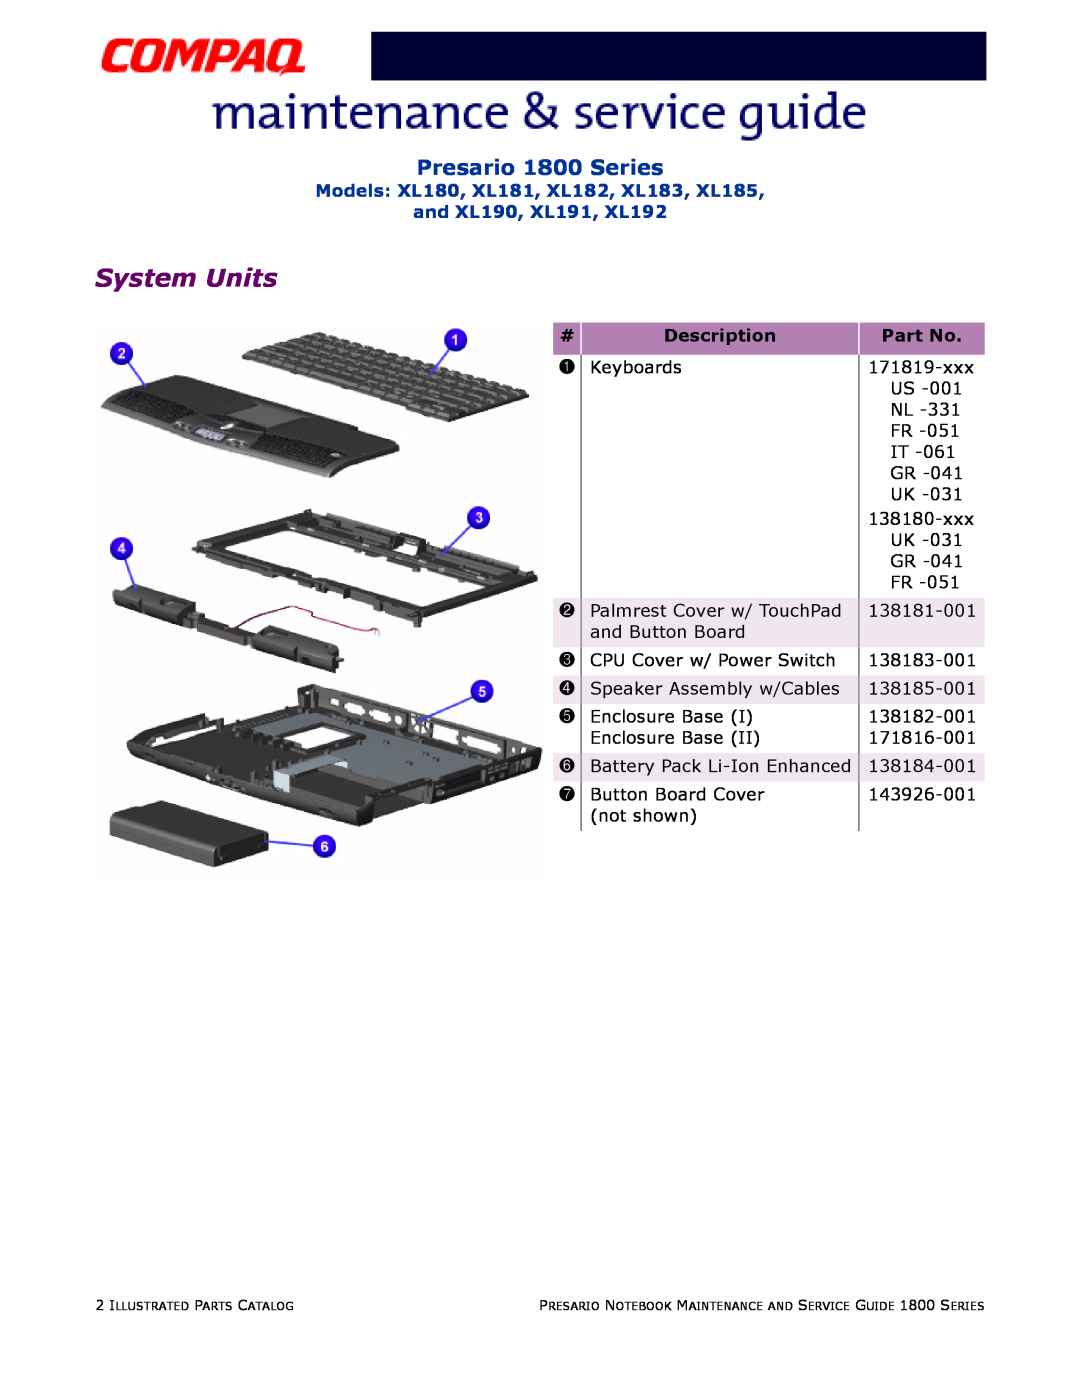 Compaq System Units, Presario 1800 Series, Models XL180, XL181, XL182, XL183, XL185 and XL190, XL191, XL192 